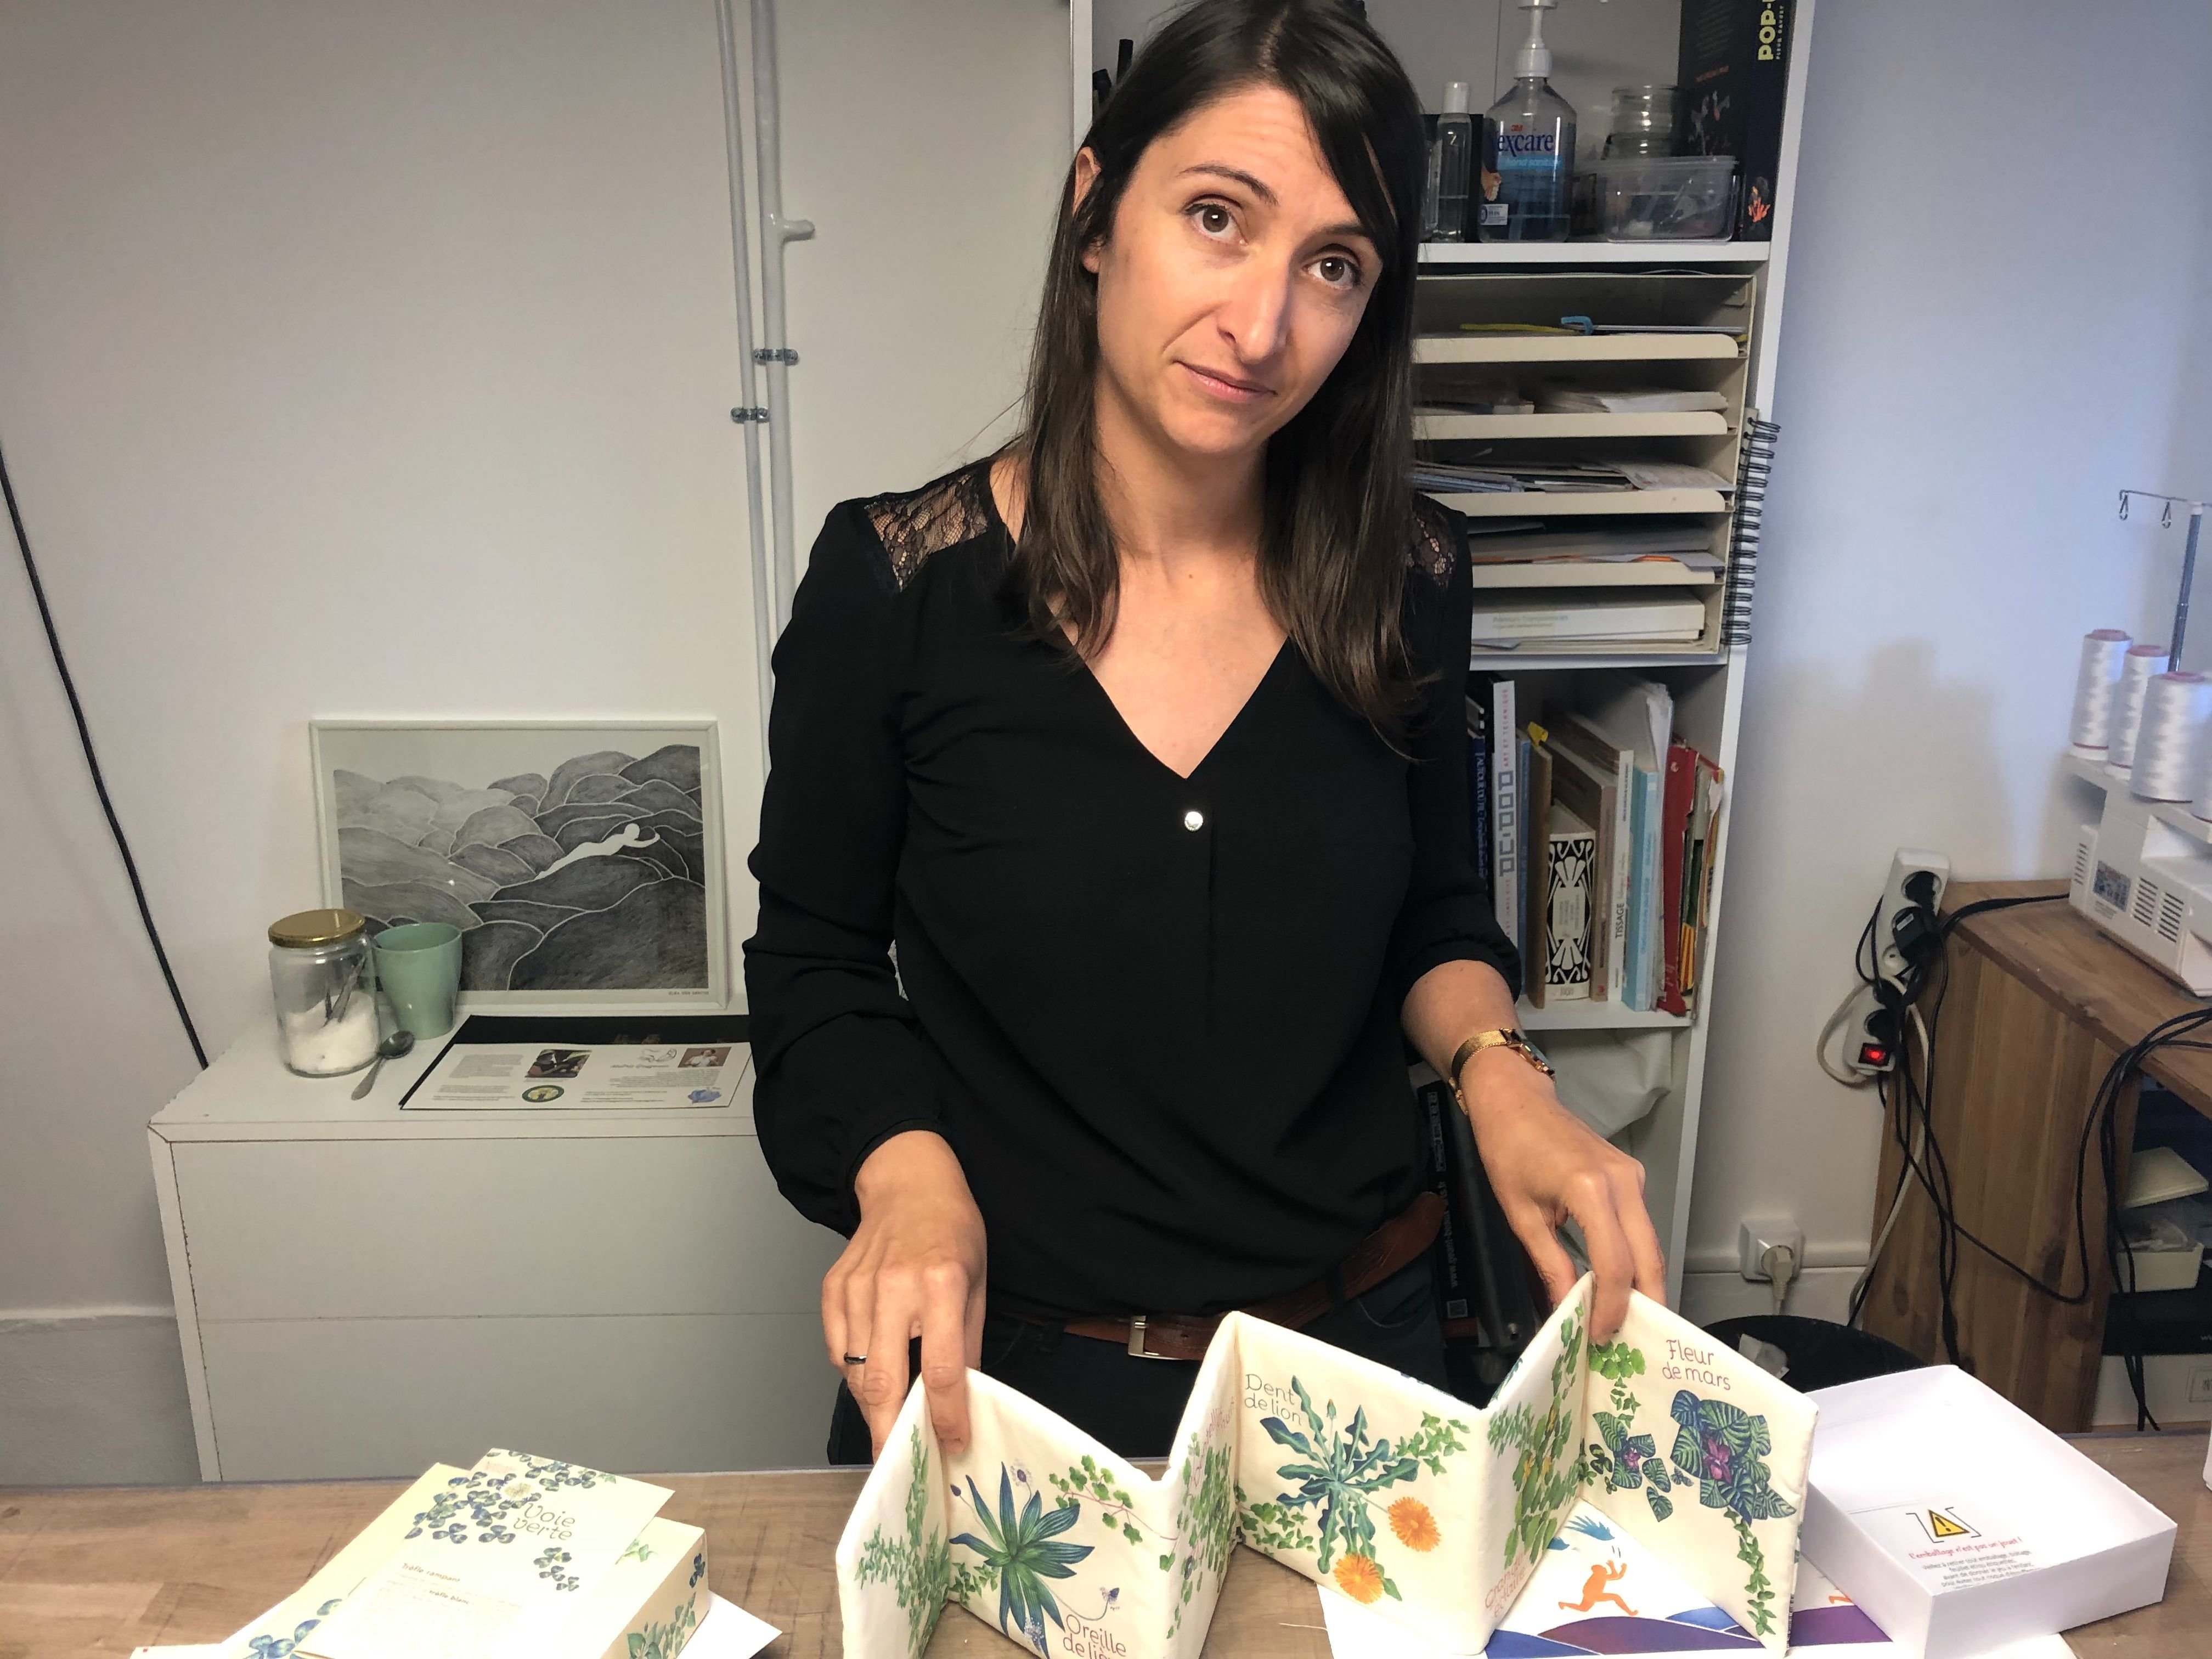 Sophie Bonnomet crée des livres textiles dans son atelier d'Allez-Zou éditions à La Ferté-Saint-Aubin. LP/François-Xavier Rivaud